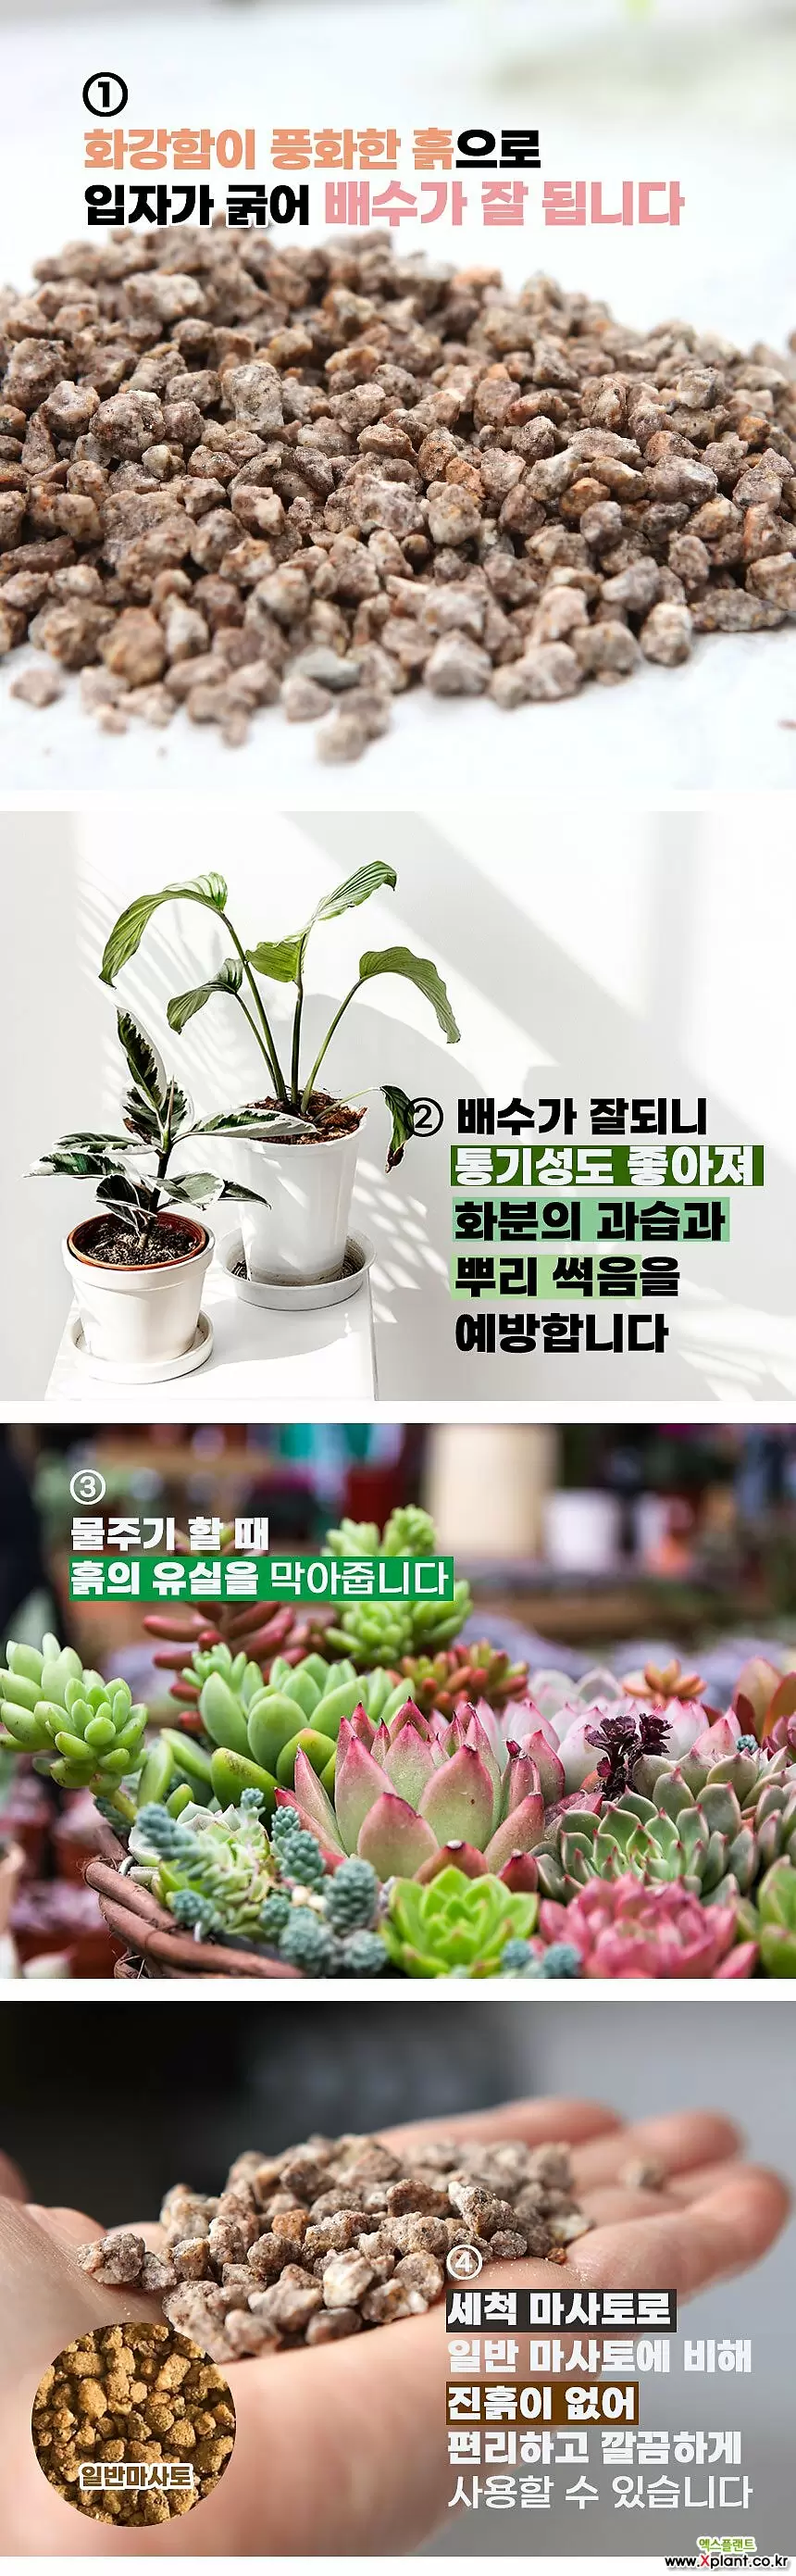 국민마사토 김해세척마사(중립)-주말농장 식물보호제 영양제 활력제 인아트스튜디오